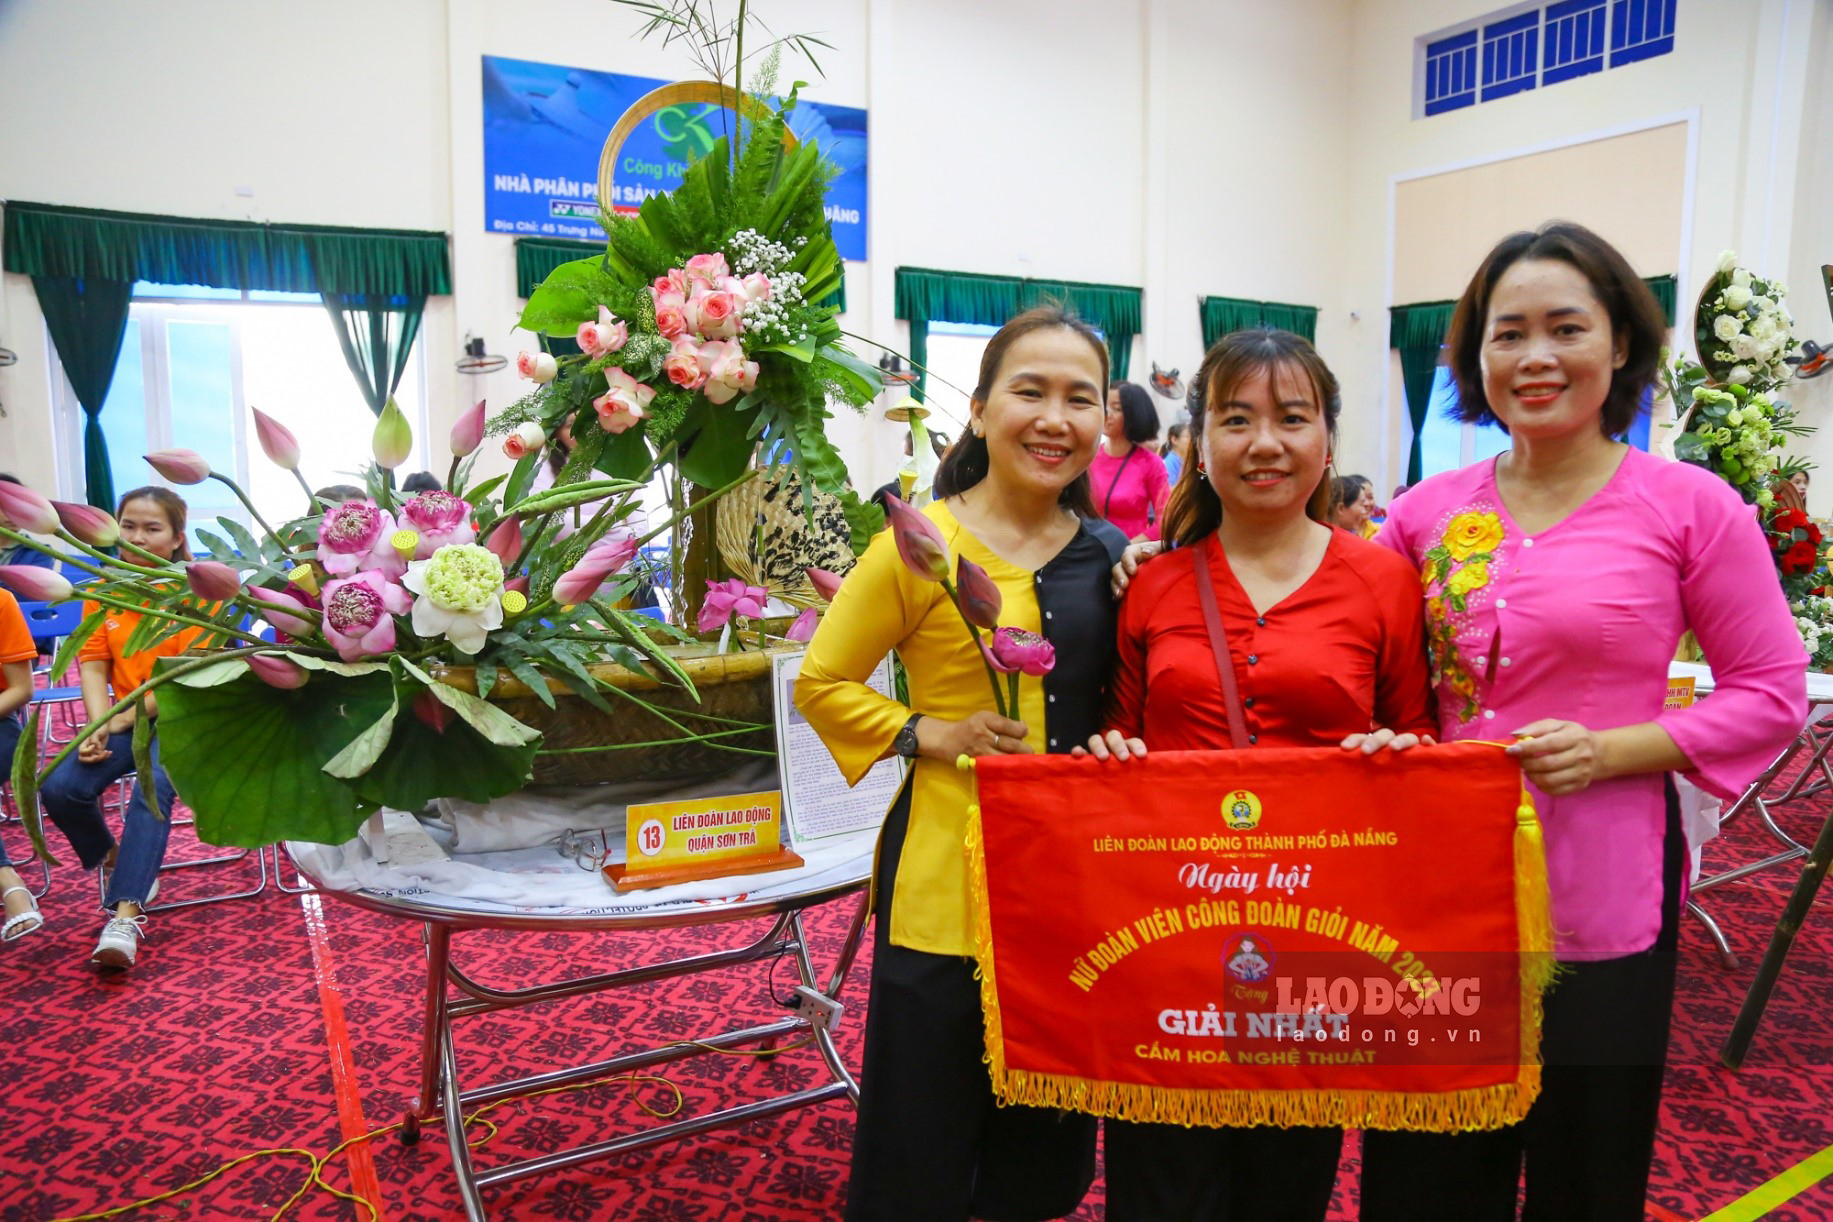 Kết quả giải nhất thi cắm hoa thuộc về đơn vị Liên đoàn Lao động quận Sơn Trà.